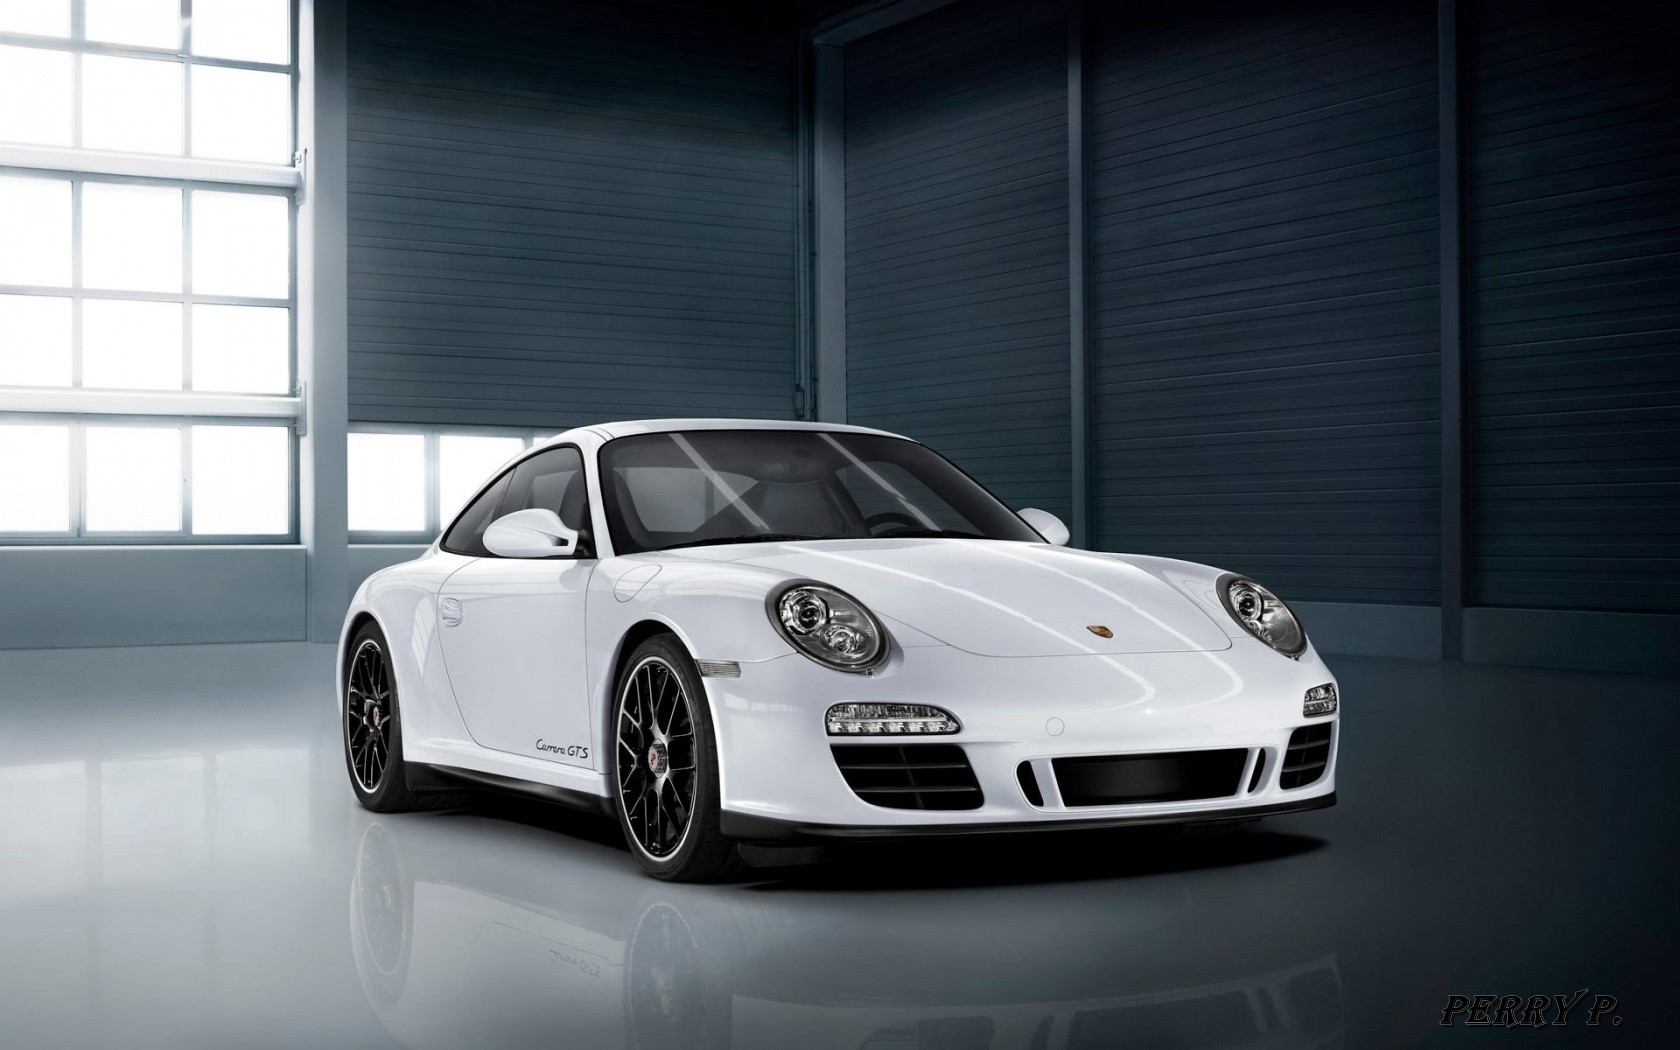 General 1680x1050 car Porsche white cars Porsche 911 Porsche 997 vehicle German cars Volkswagen Group